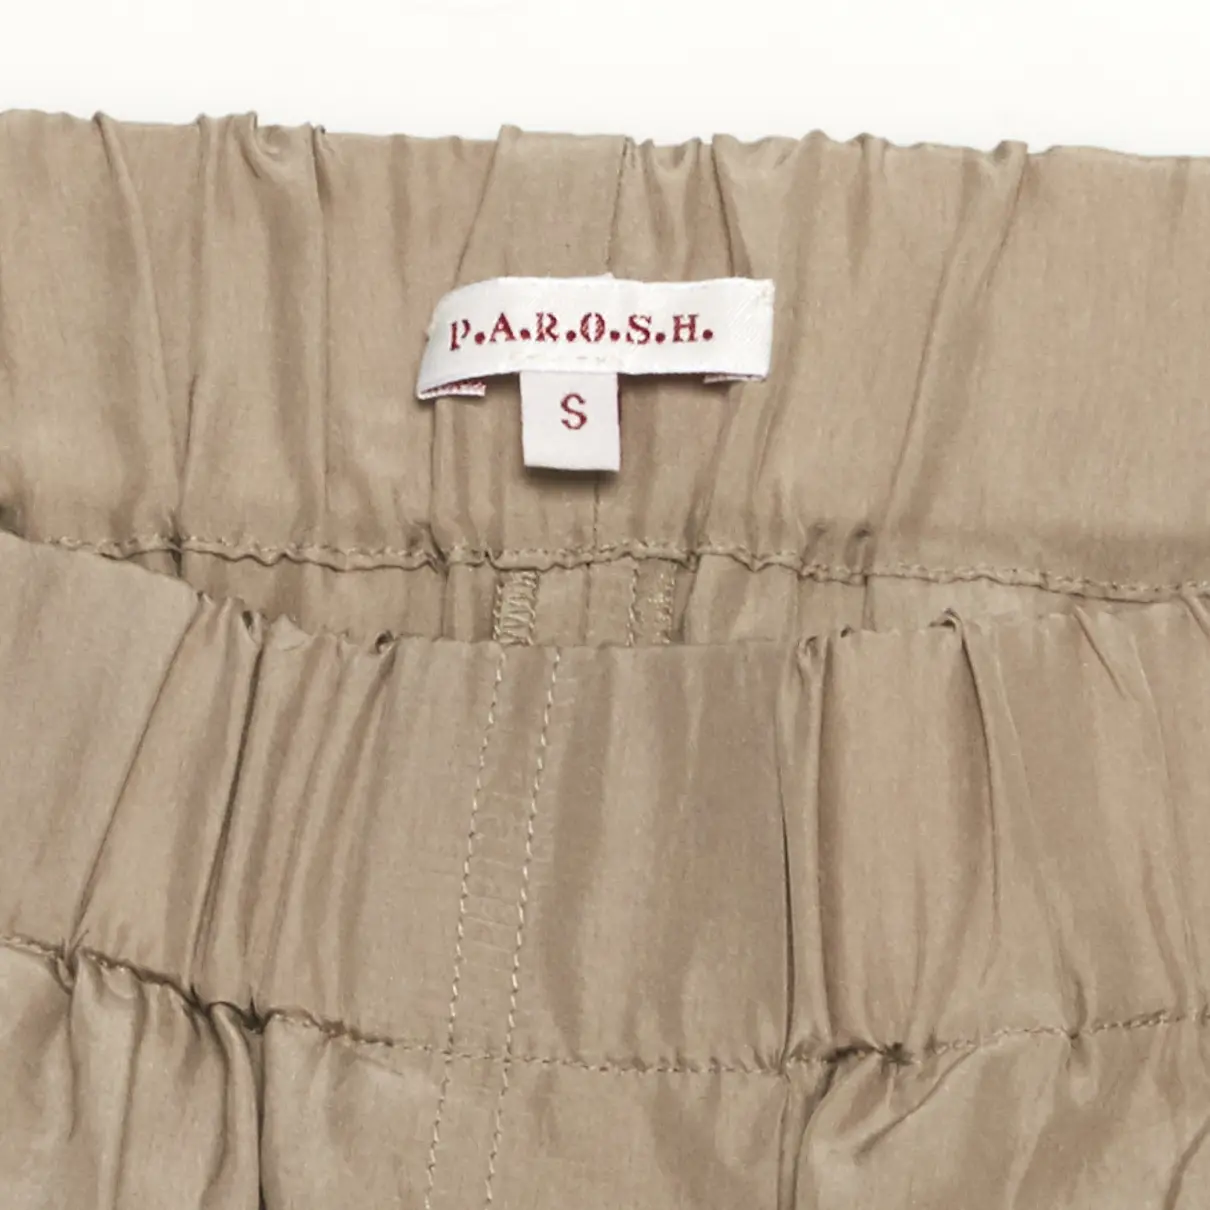 Buy Parosh Silk large pants online